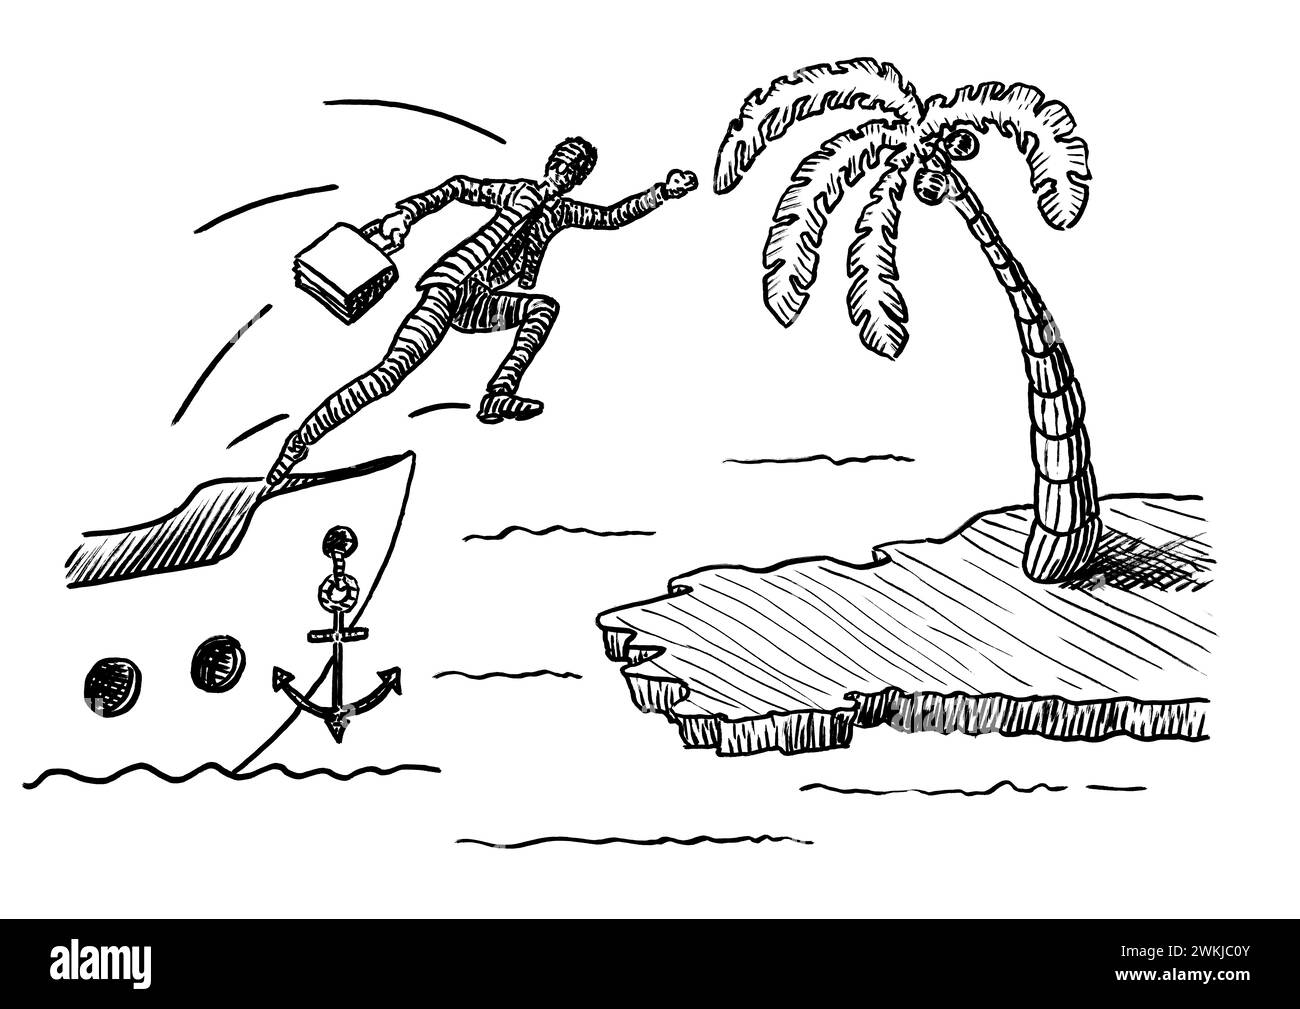 Disegno a mano libera di un uomo d'affari che salta da una nave per raggiungere un'isola con palme. Metafora per leadership, imprenditorialità, aspirazione, di Foto Stock